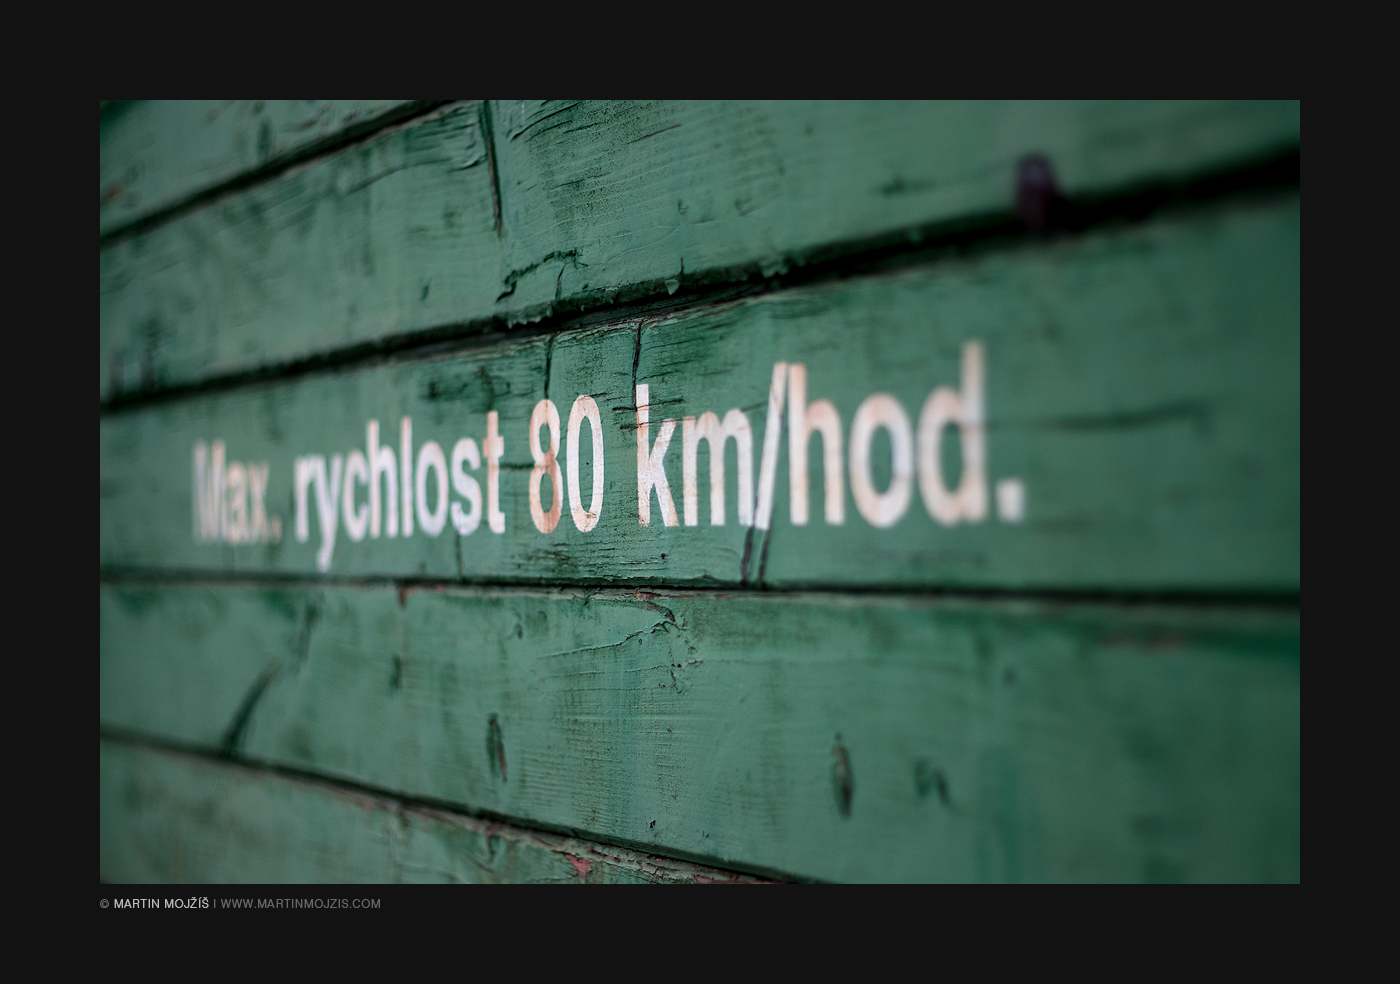 Nápis na zeleně natřené dřevěné stěně železničního vagonu, udávající nejvyšší povolenou rychlost 80 km/hod. Železniční muzeum v Lužné u Rakovníka.